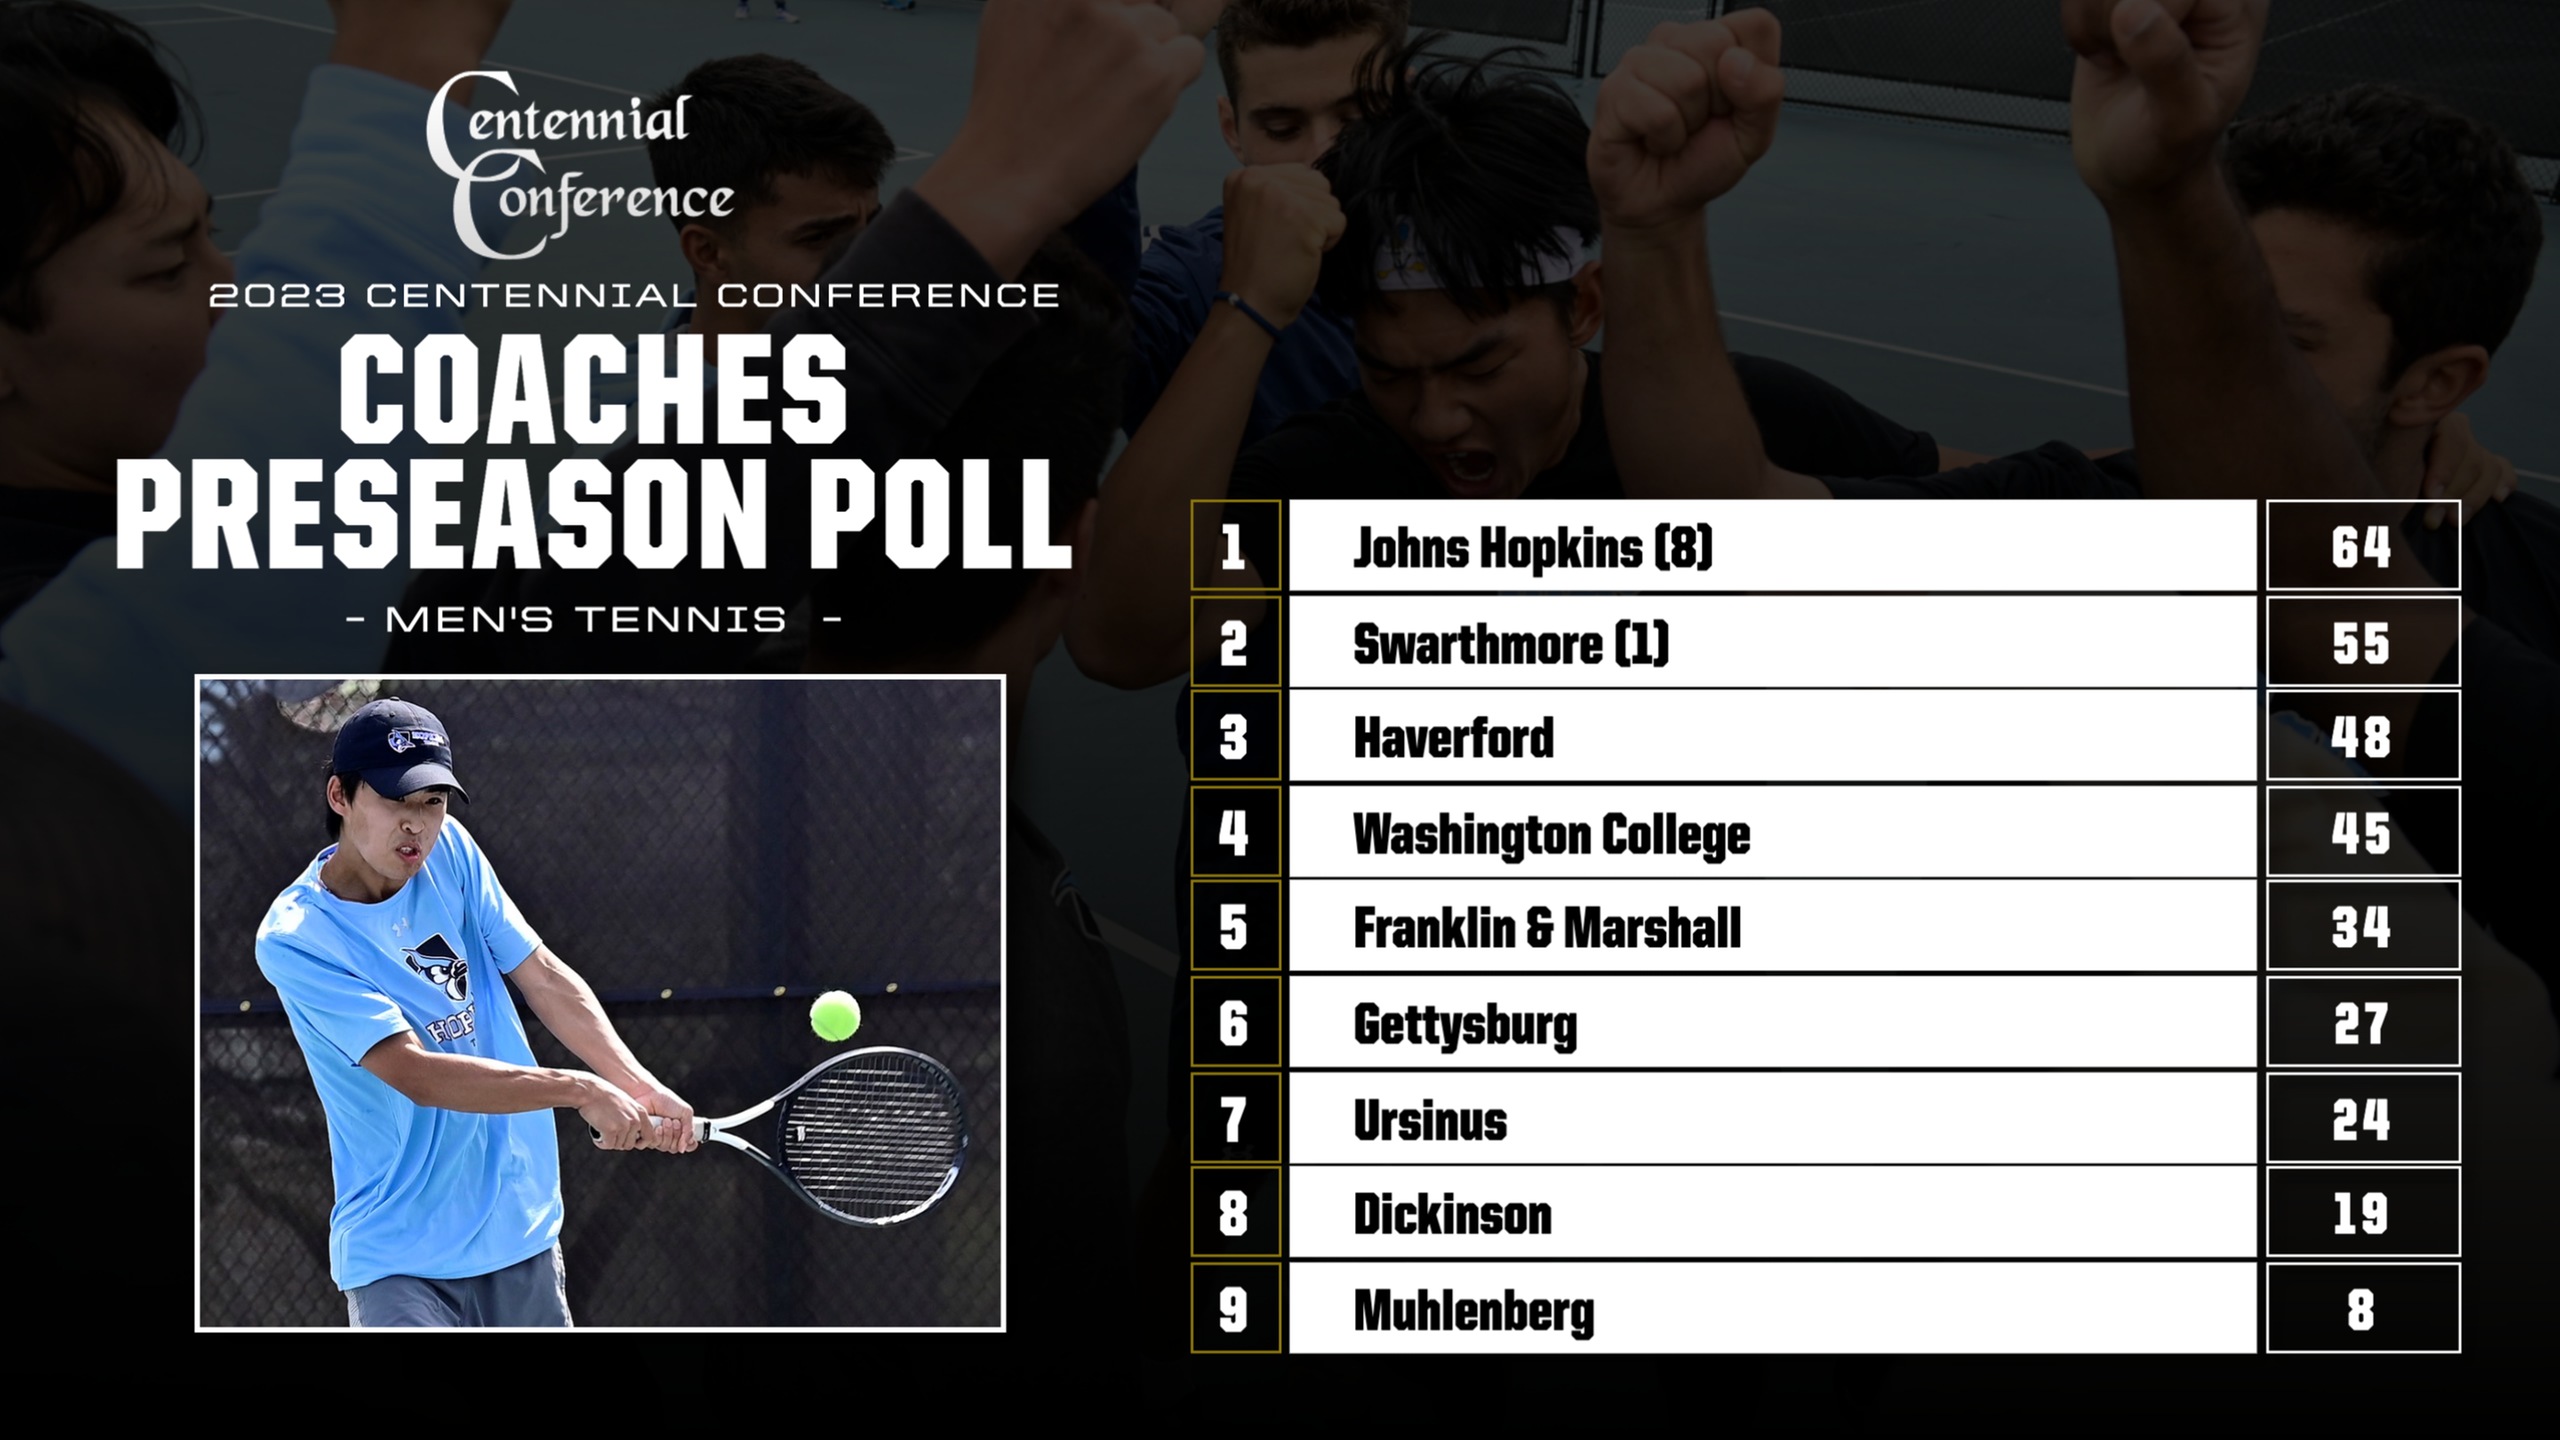 Blue Jays Selected as Favorite in Men's Tennis